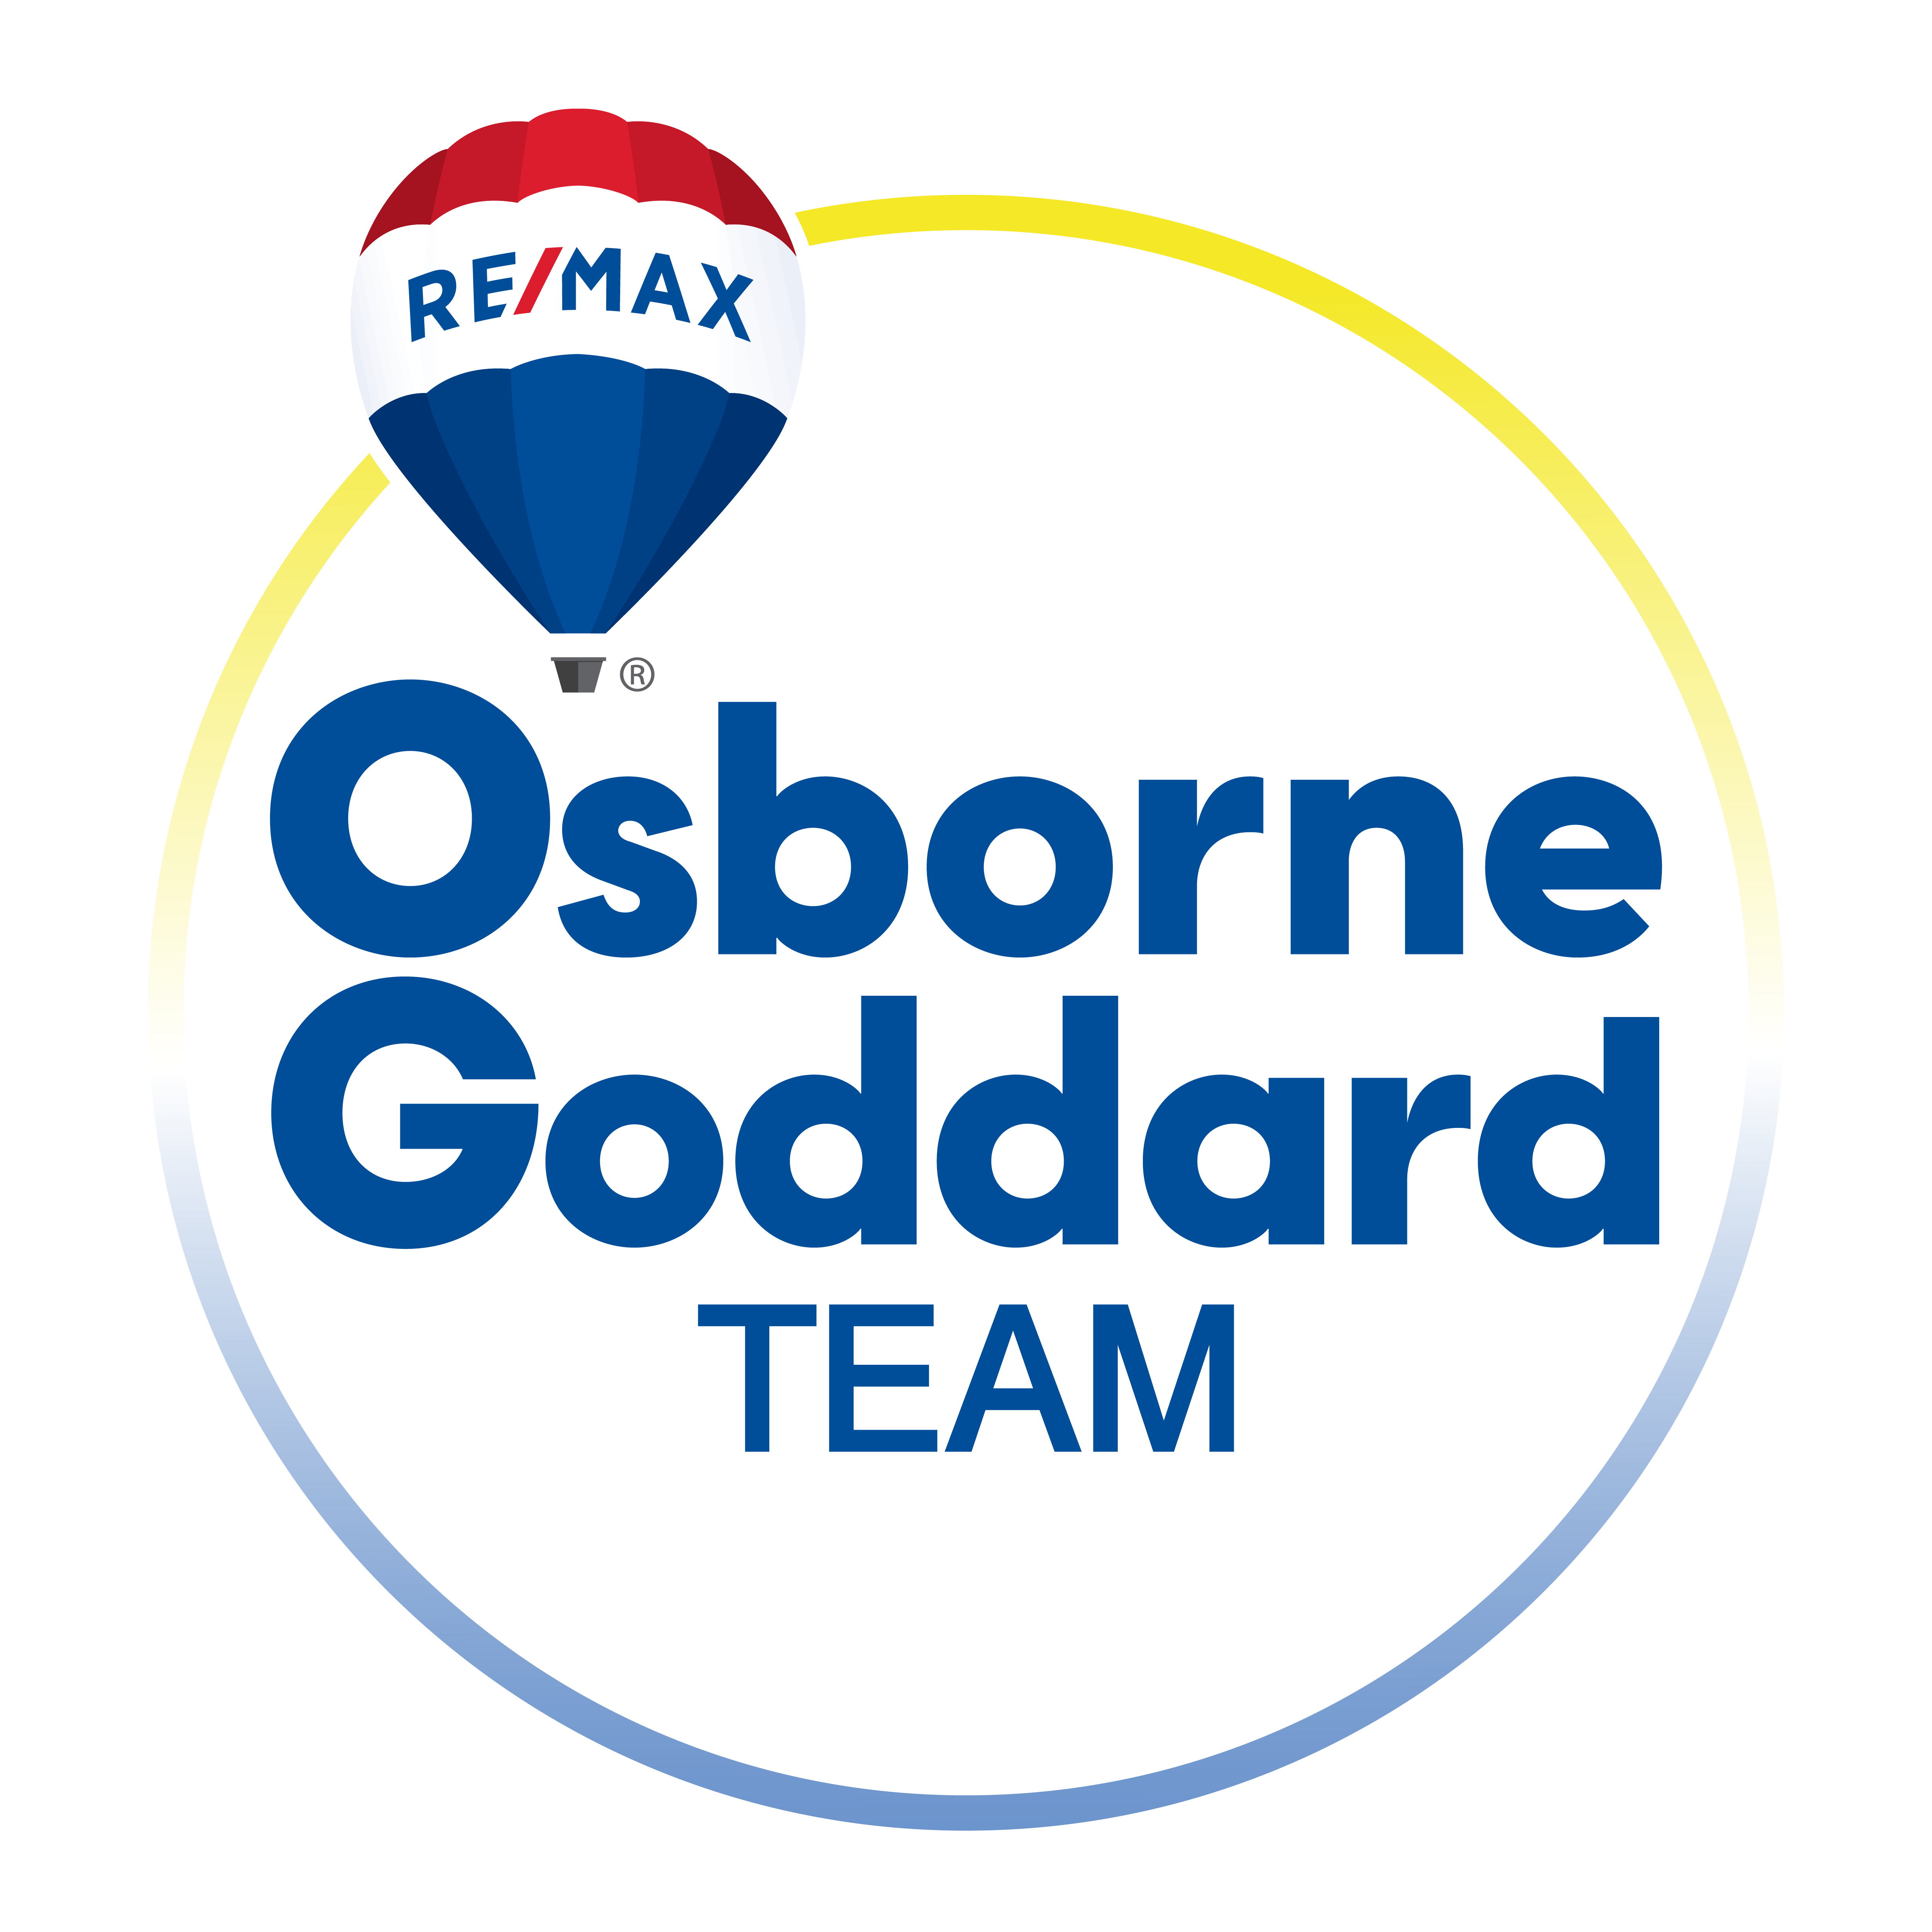 Osborne Goddard Team